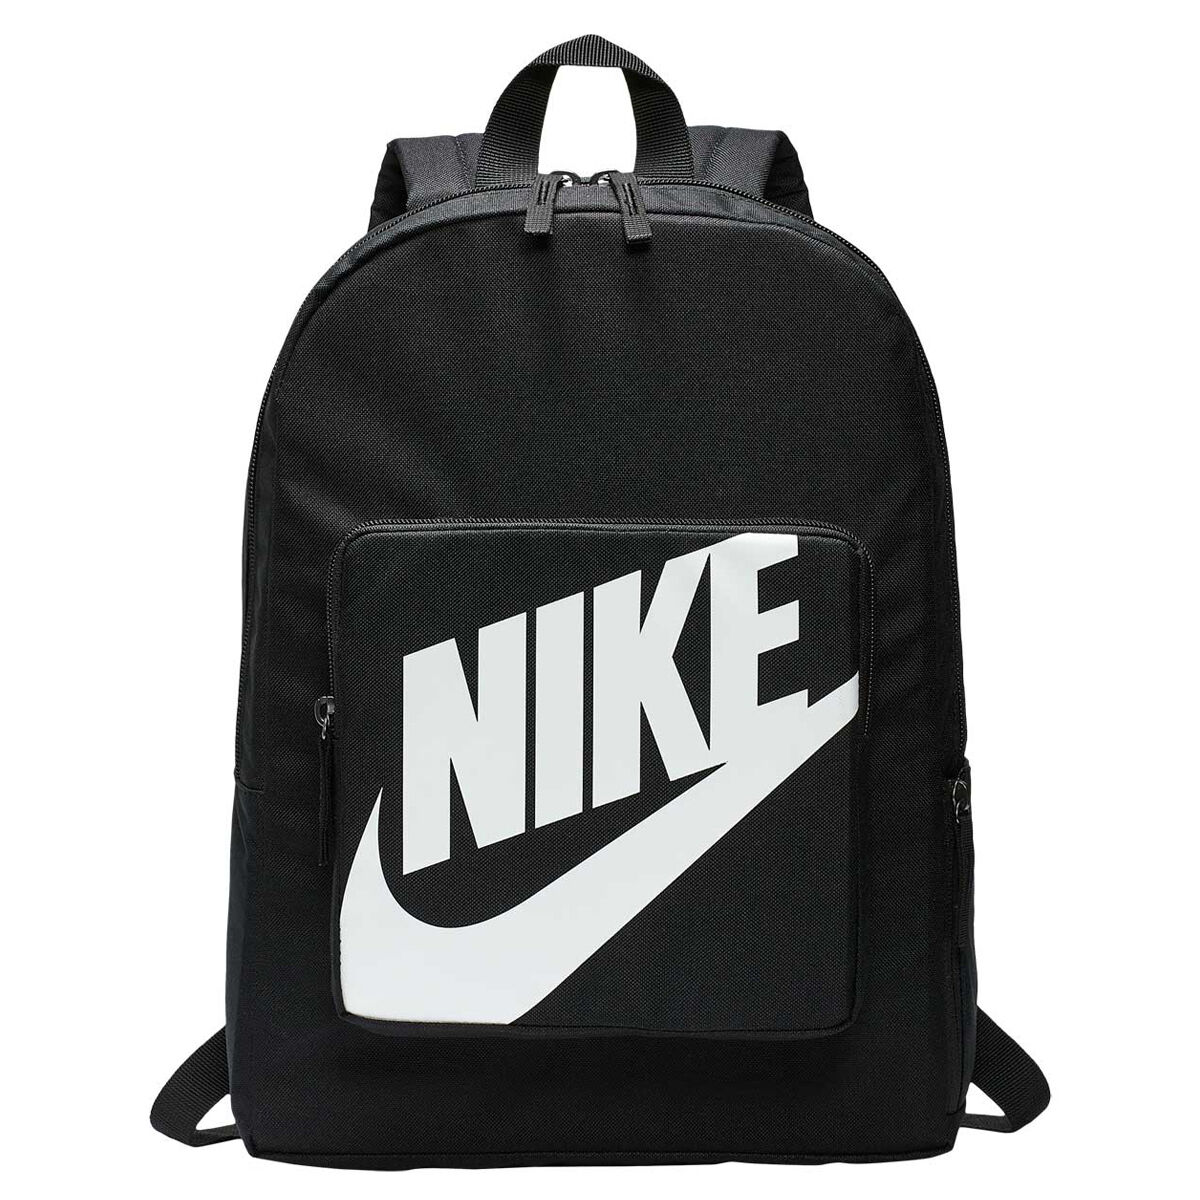 nike youth backpack